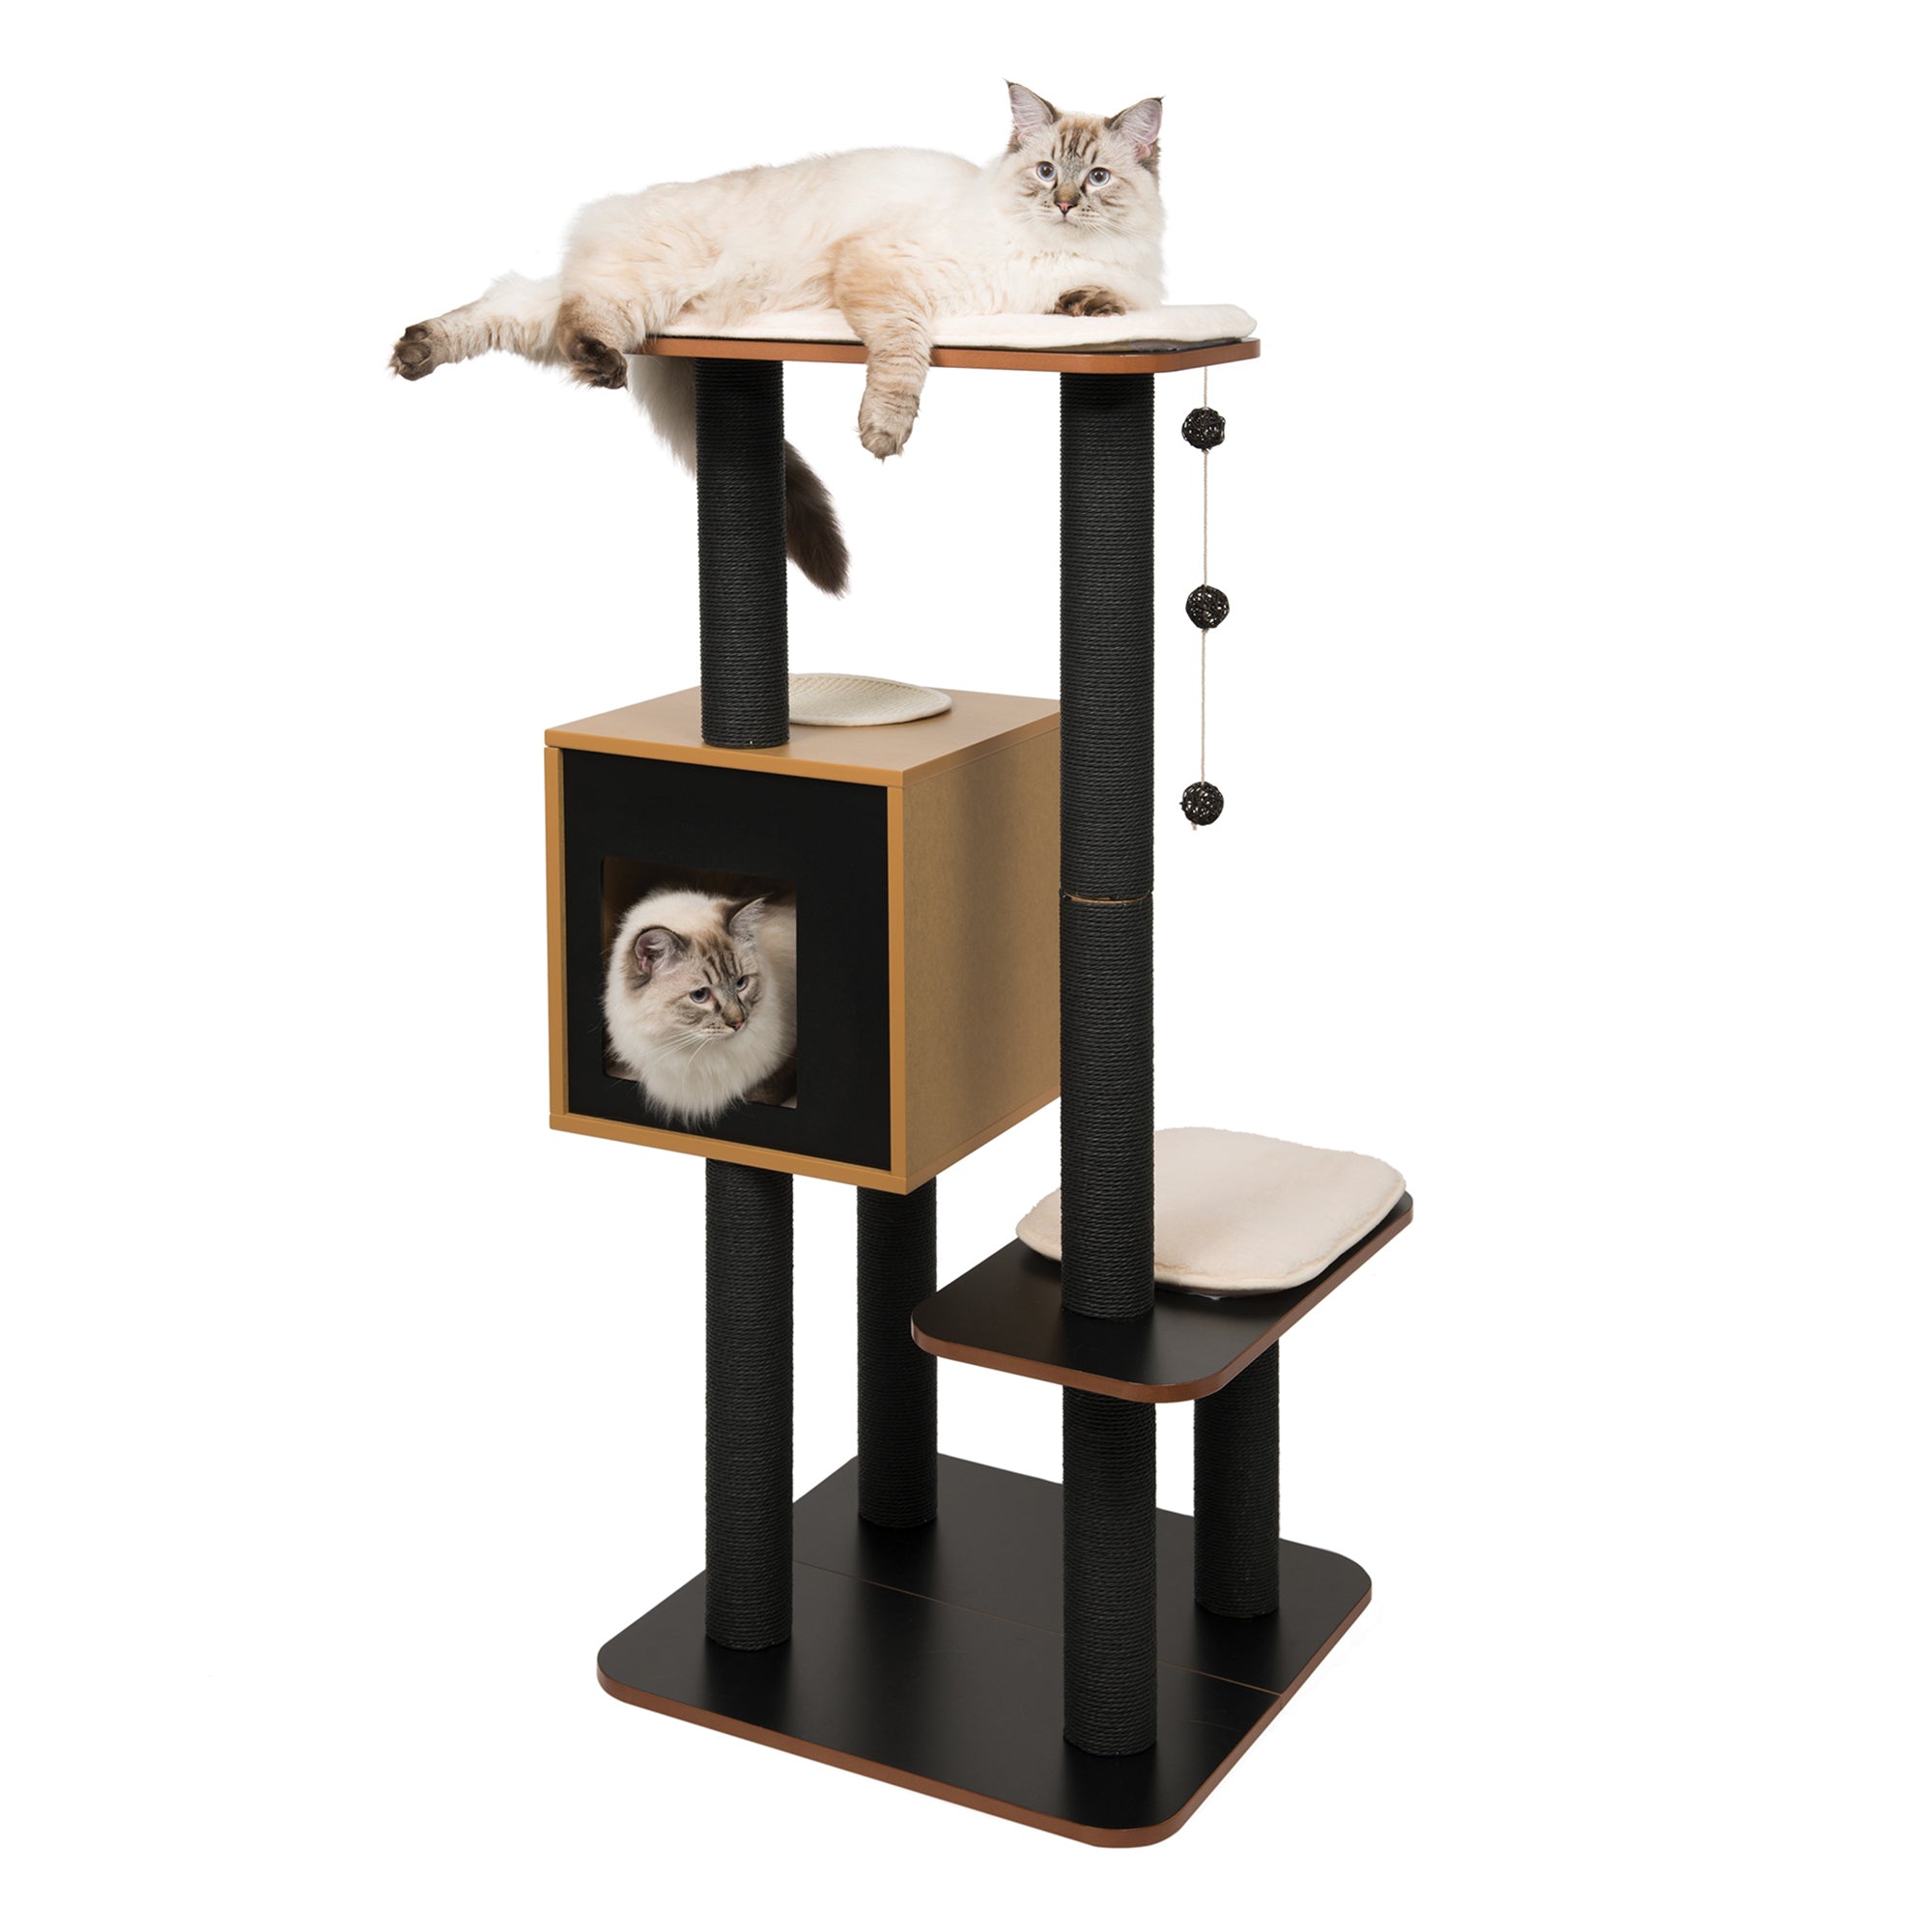 Catit Cat Furniture Vesper High Base Black